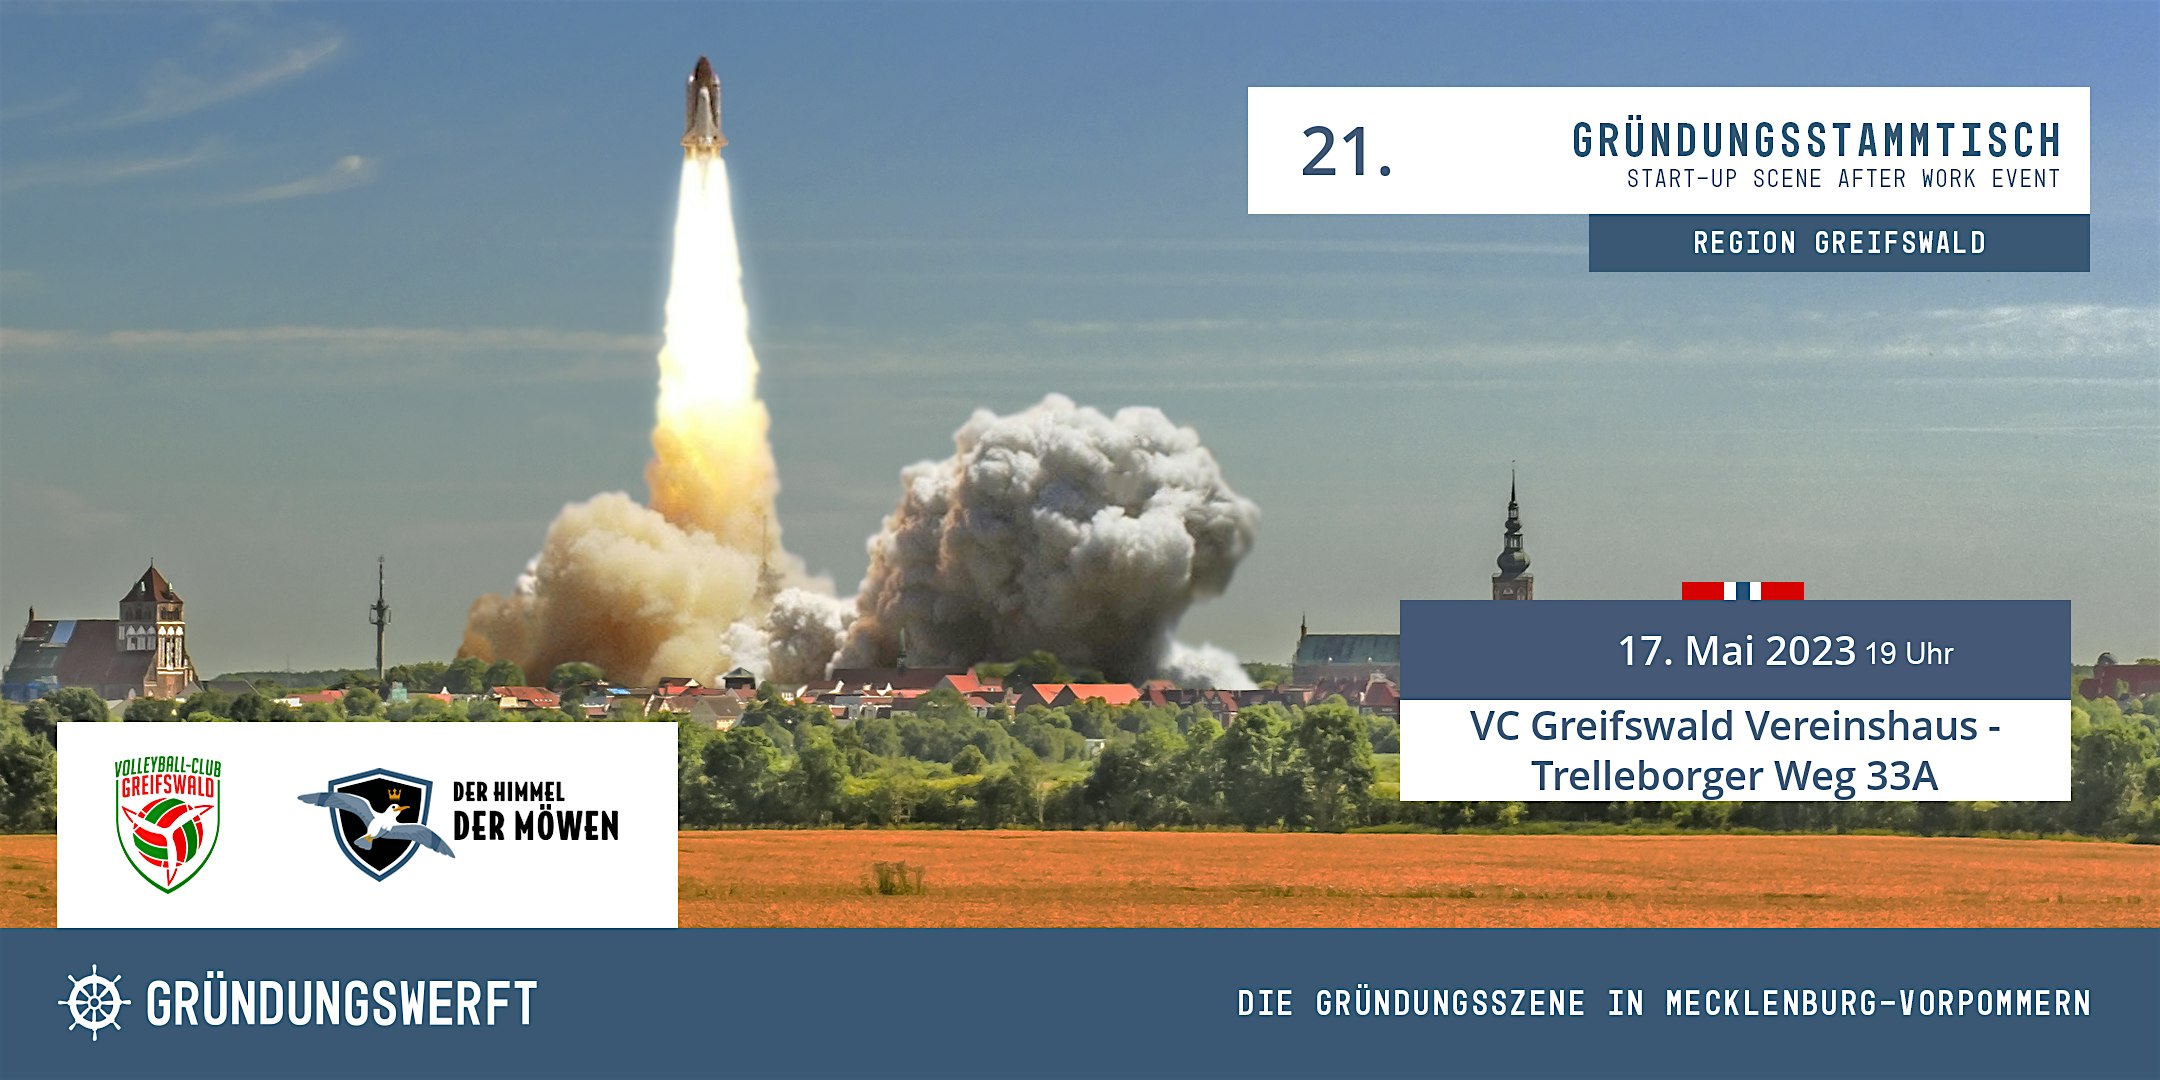 Veranstaltungsbild für die Veranstaltung 21. Gründungsstammtisch Greifswald beim VC Greifswald